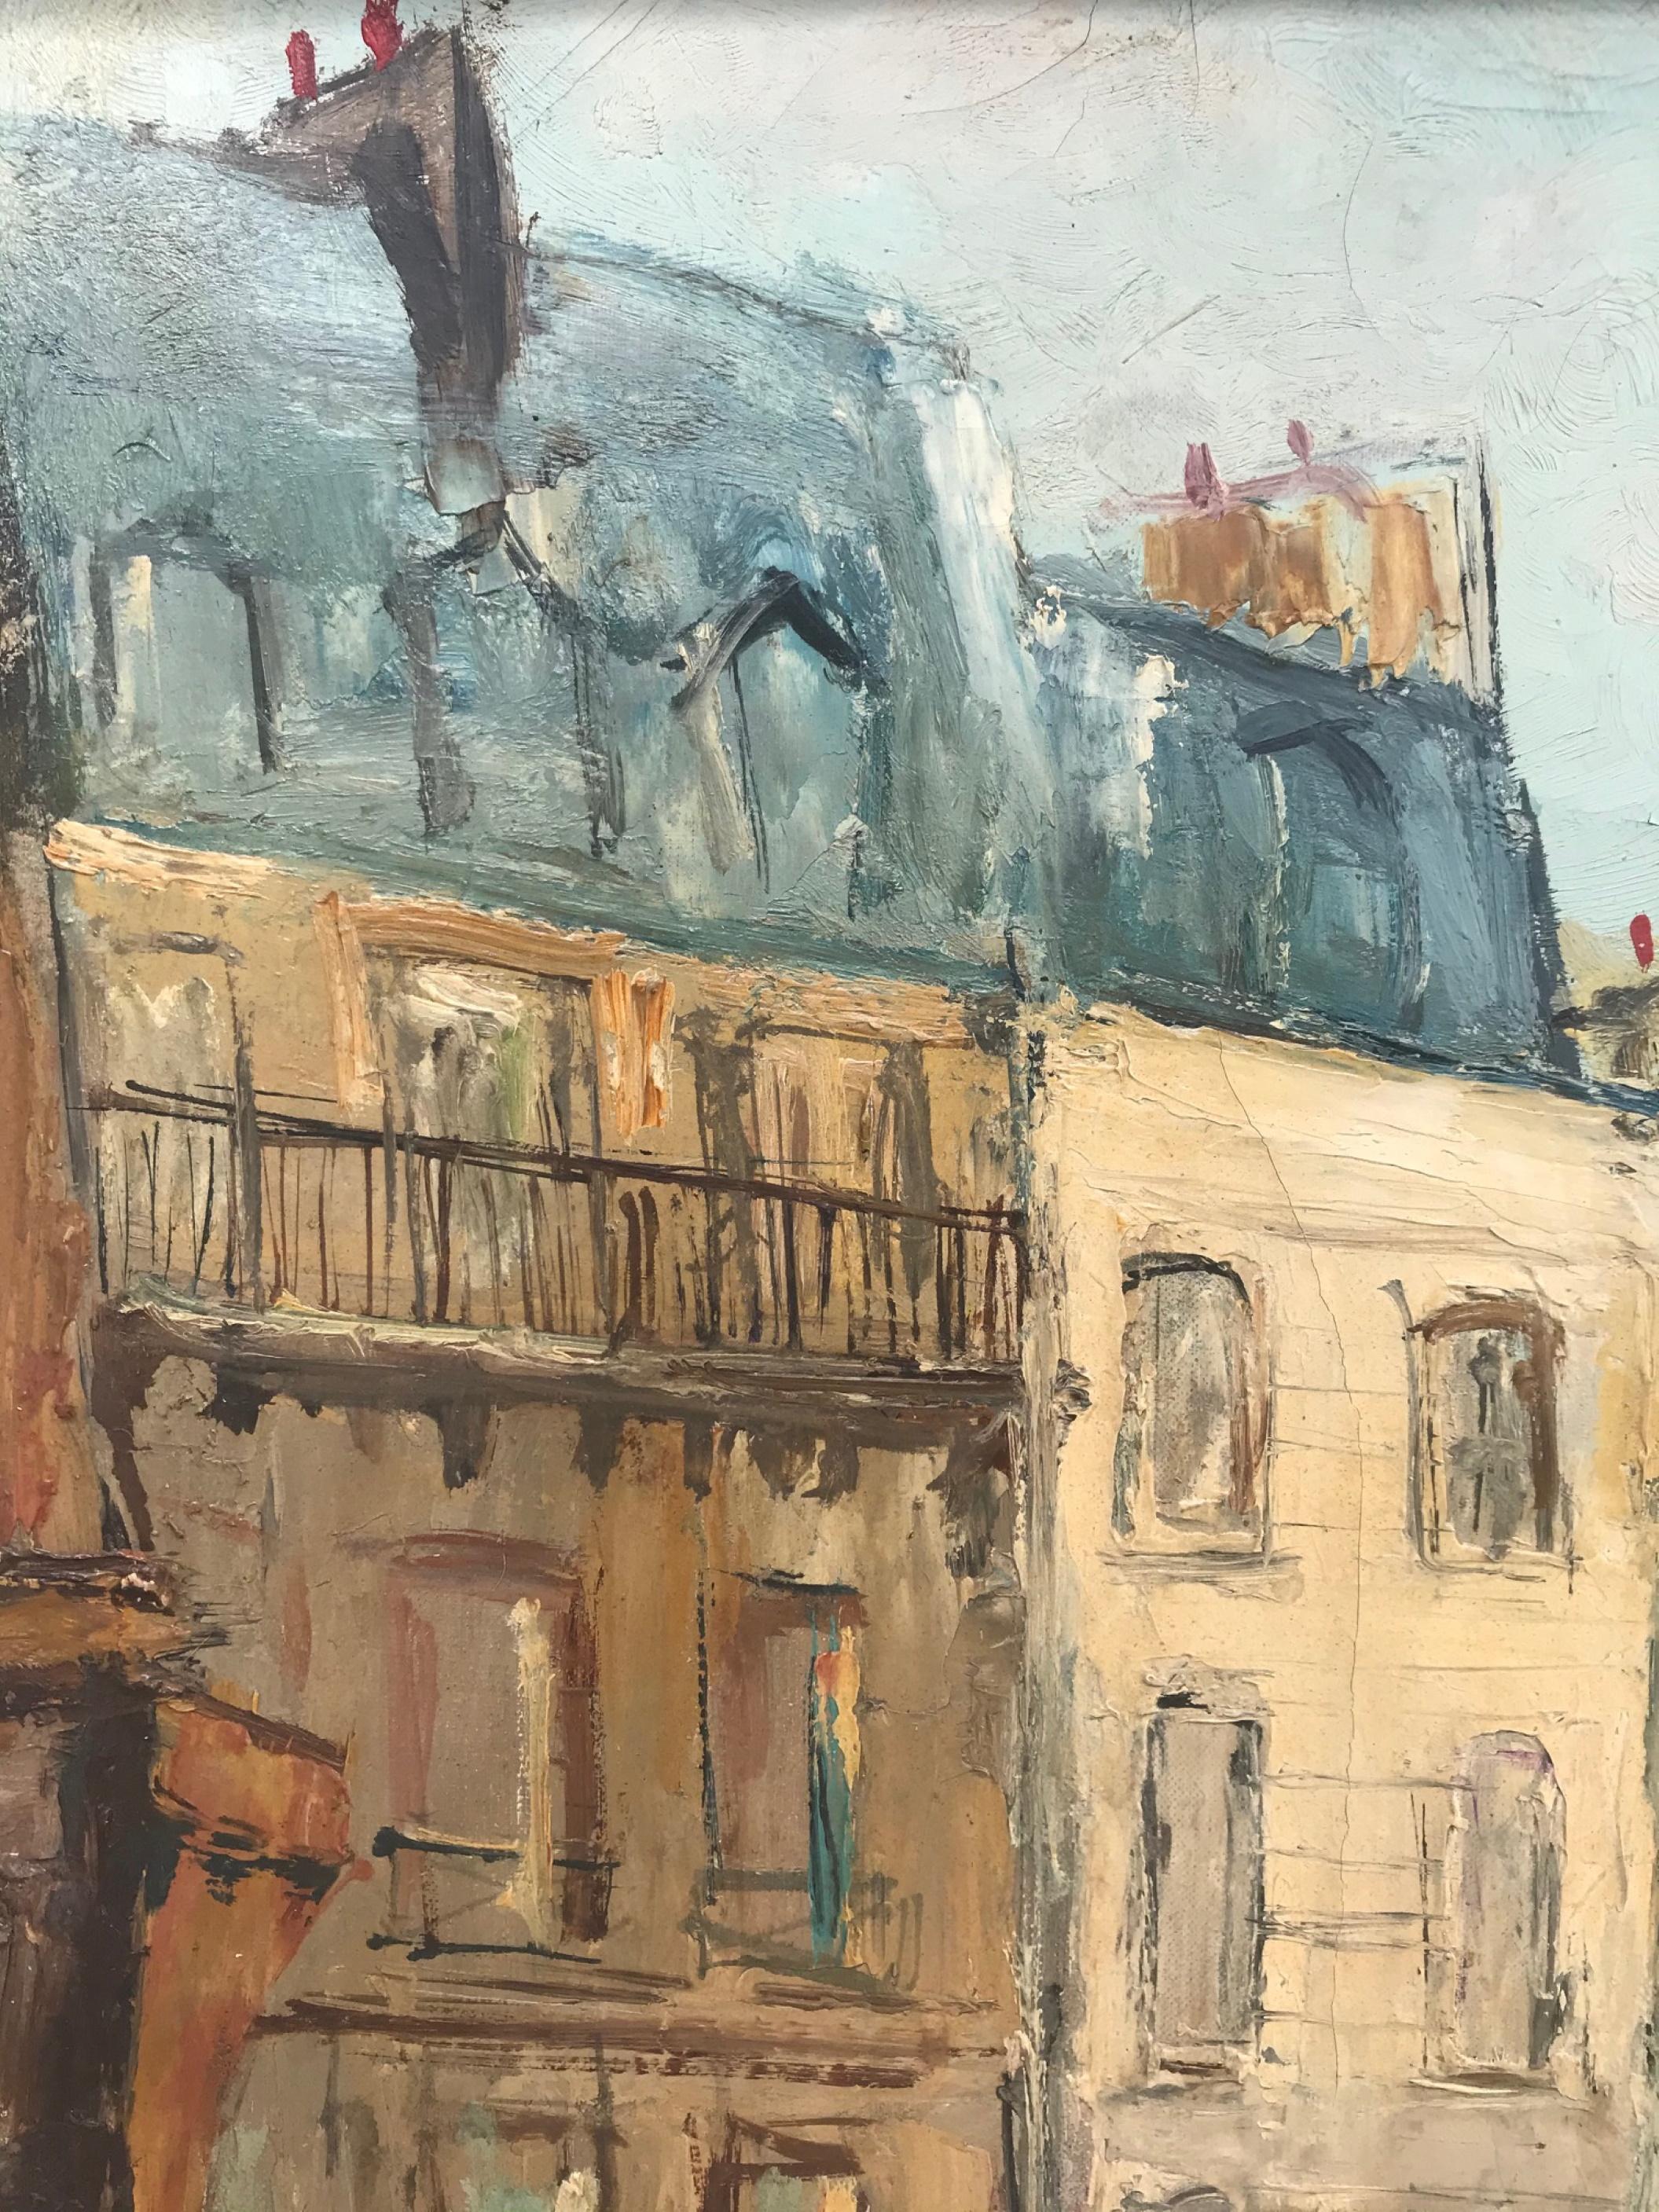 Pariser Stadtbild, signiertes und gerahmtes Öl auf Leinwand von Serge Belloni, '57

Dieses Gemälde weist alle charakteristischen Merkmale der berühmten Pariser Werke Bellonis auf. Die gemalte Straßenecke zeigt die Architektur der Boucherie